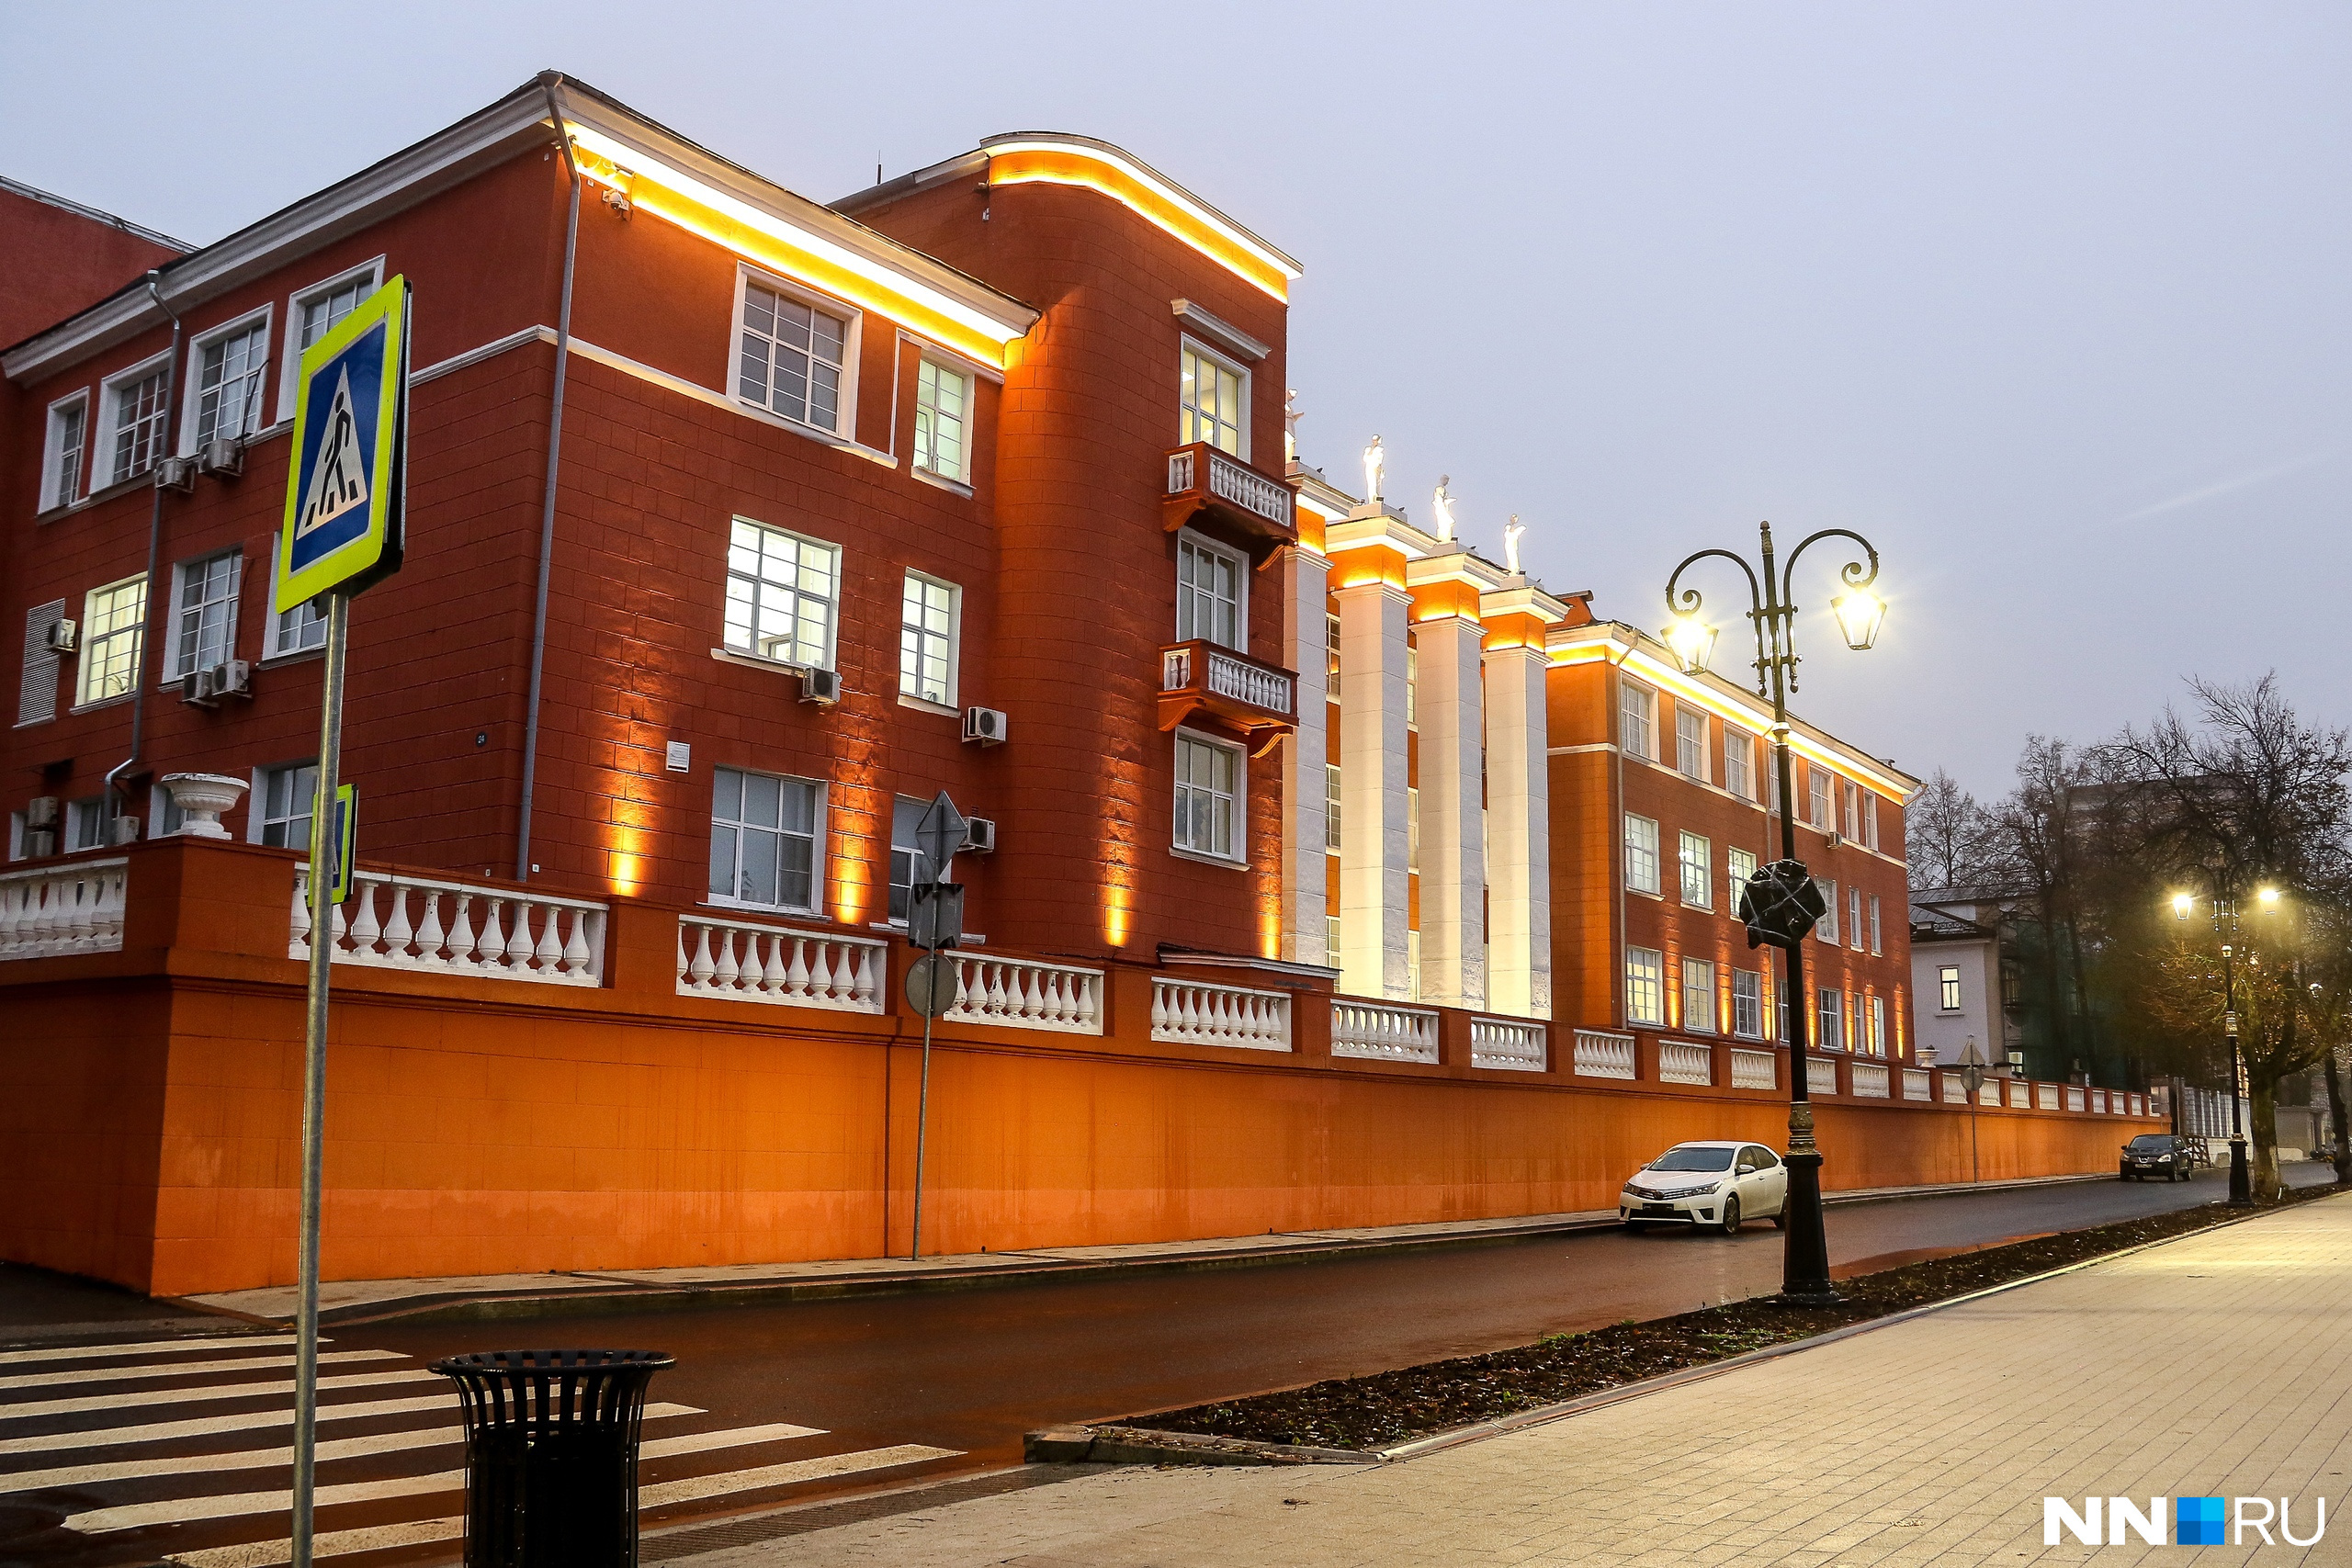 Пять университетов Нижнего Новгорода вошли в рейтинг лучших в стране. Публикуем список